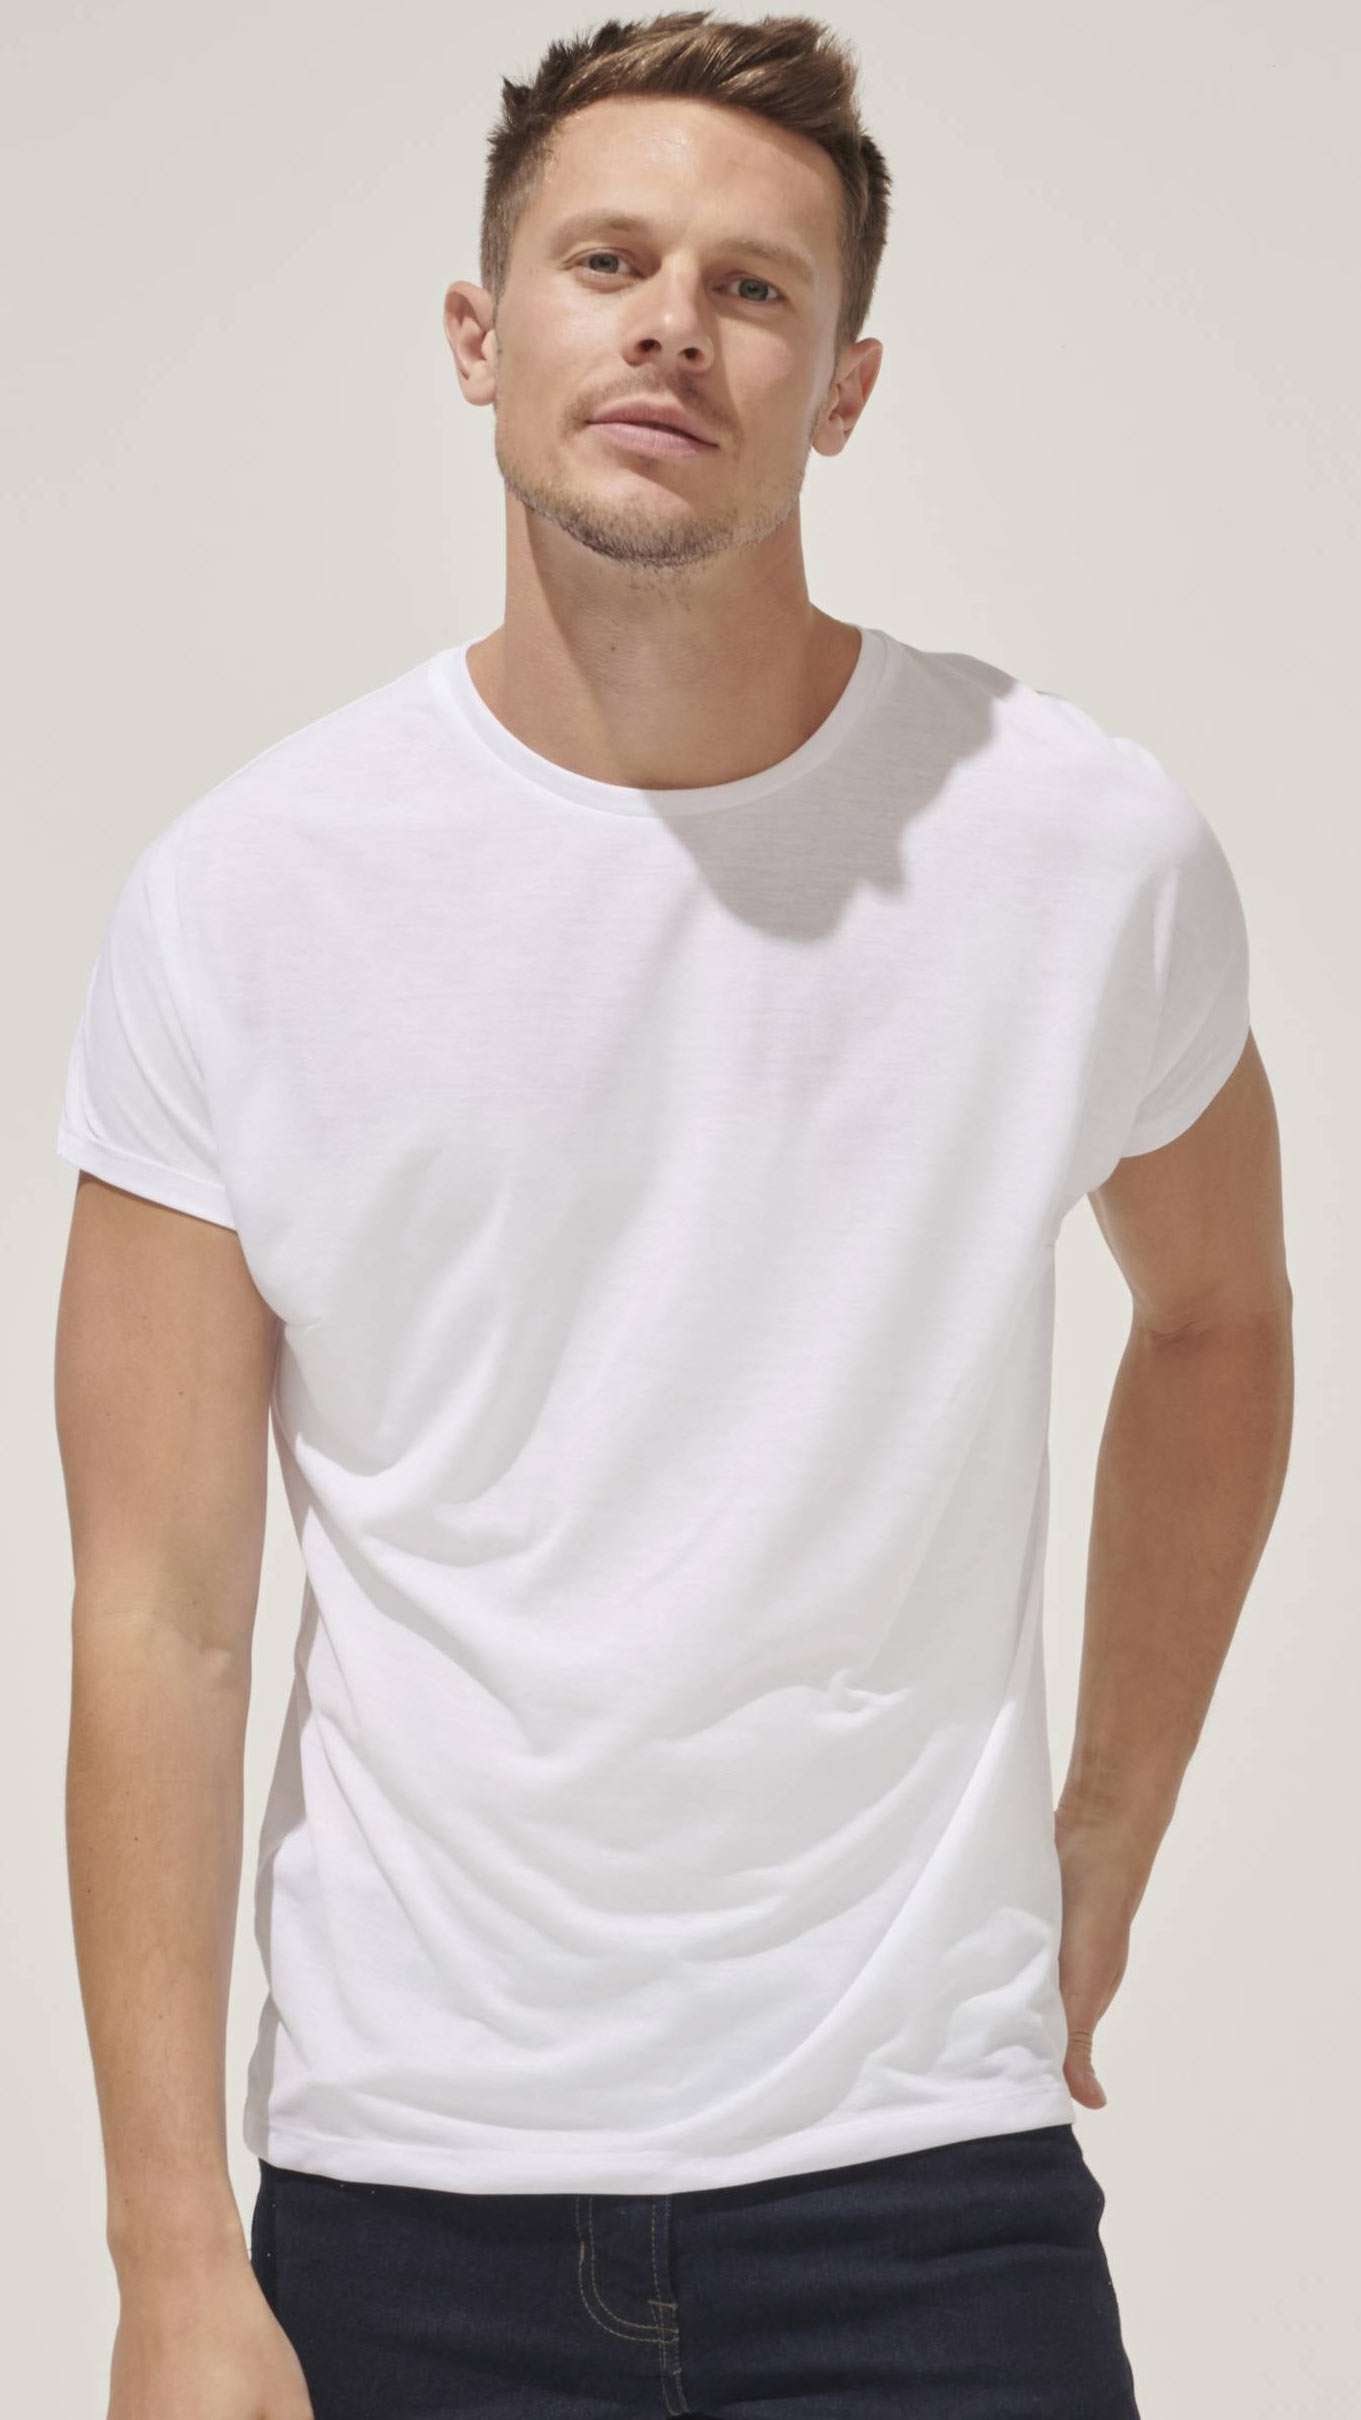 tshirt magliette personalizzate logo aziendale scritte disegni alta qualita BE MARKET shop Rimini m01704A